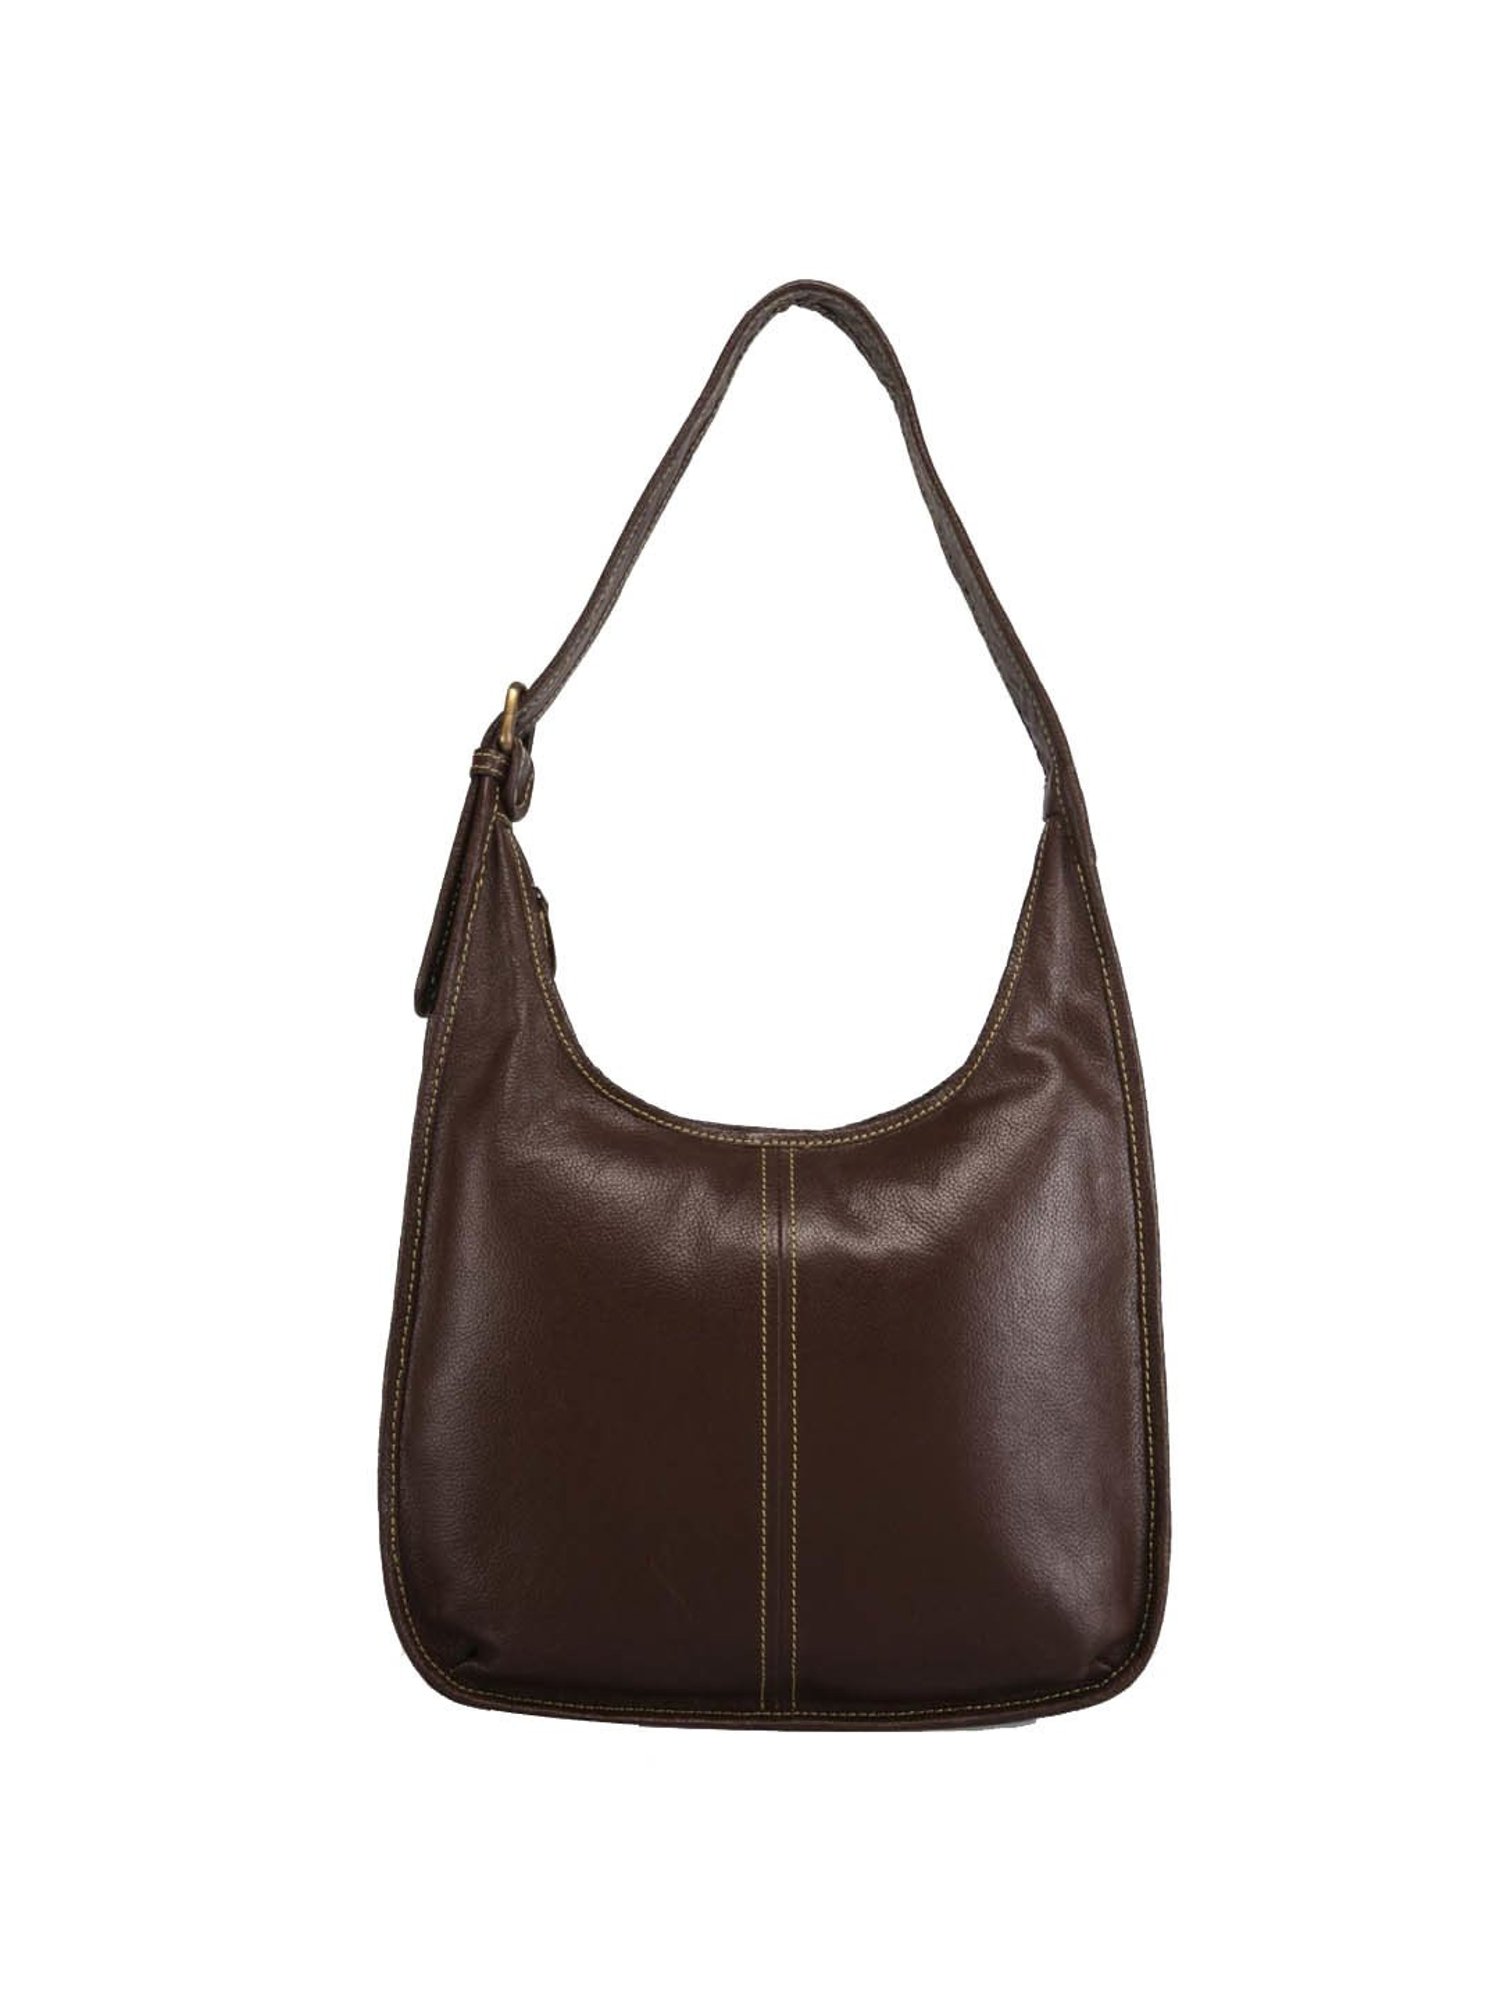 Buy Genwayne Brown Solid Large Hobo Shoulder Bag Online At Best